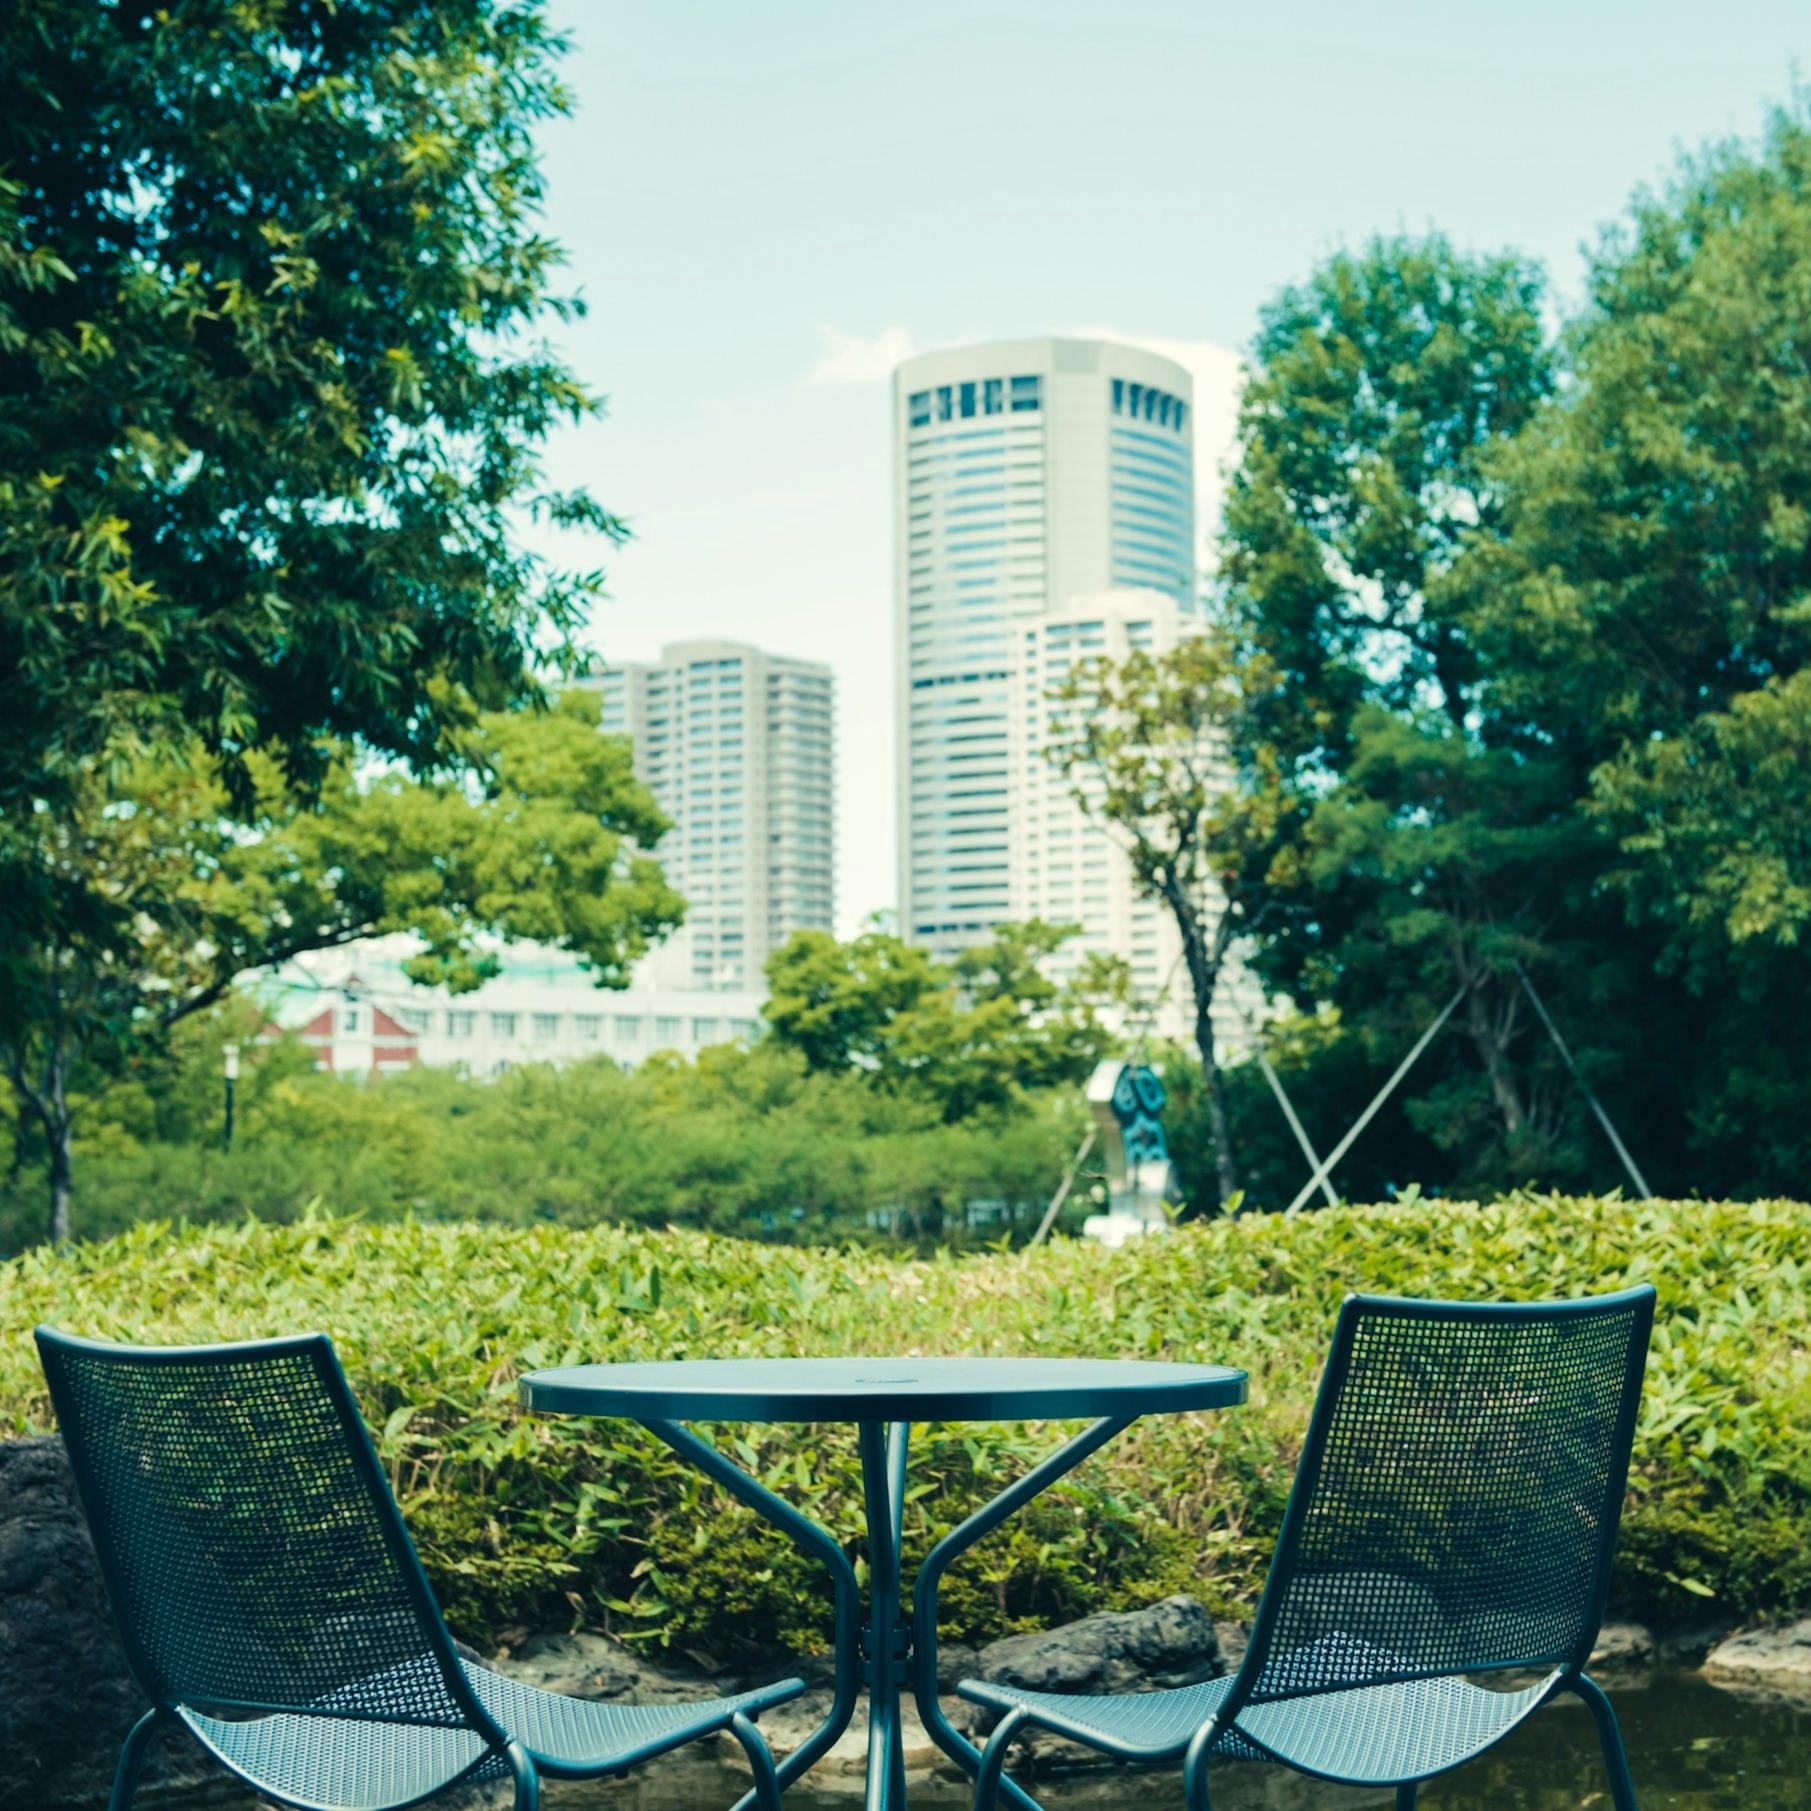 ザ ガーデンオリエンタル 大阪 7月 Afternoon Tea 2時間カフェフリー 大人気のチーズケーキなど 華やかなスイーツスタンド ランチ プラン メニュー 一休 Comレストラン